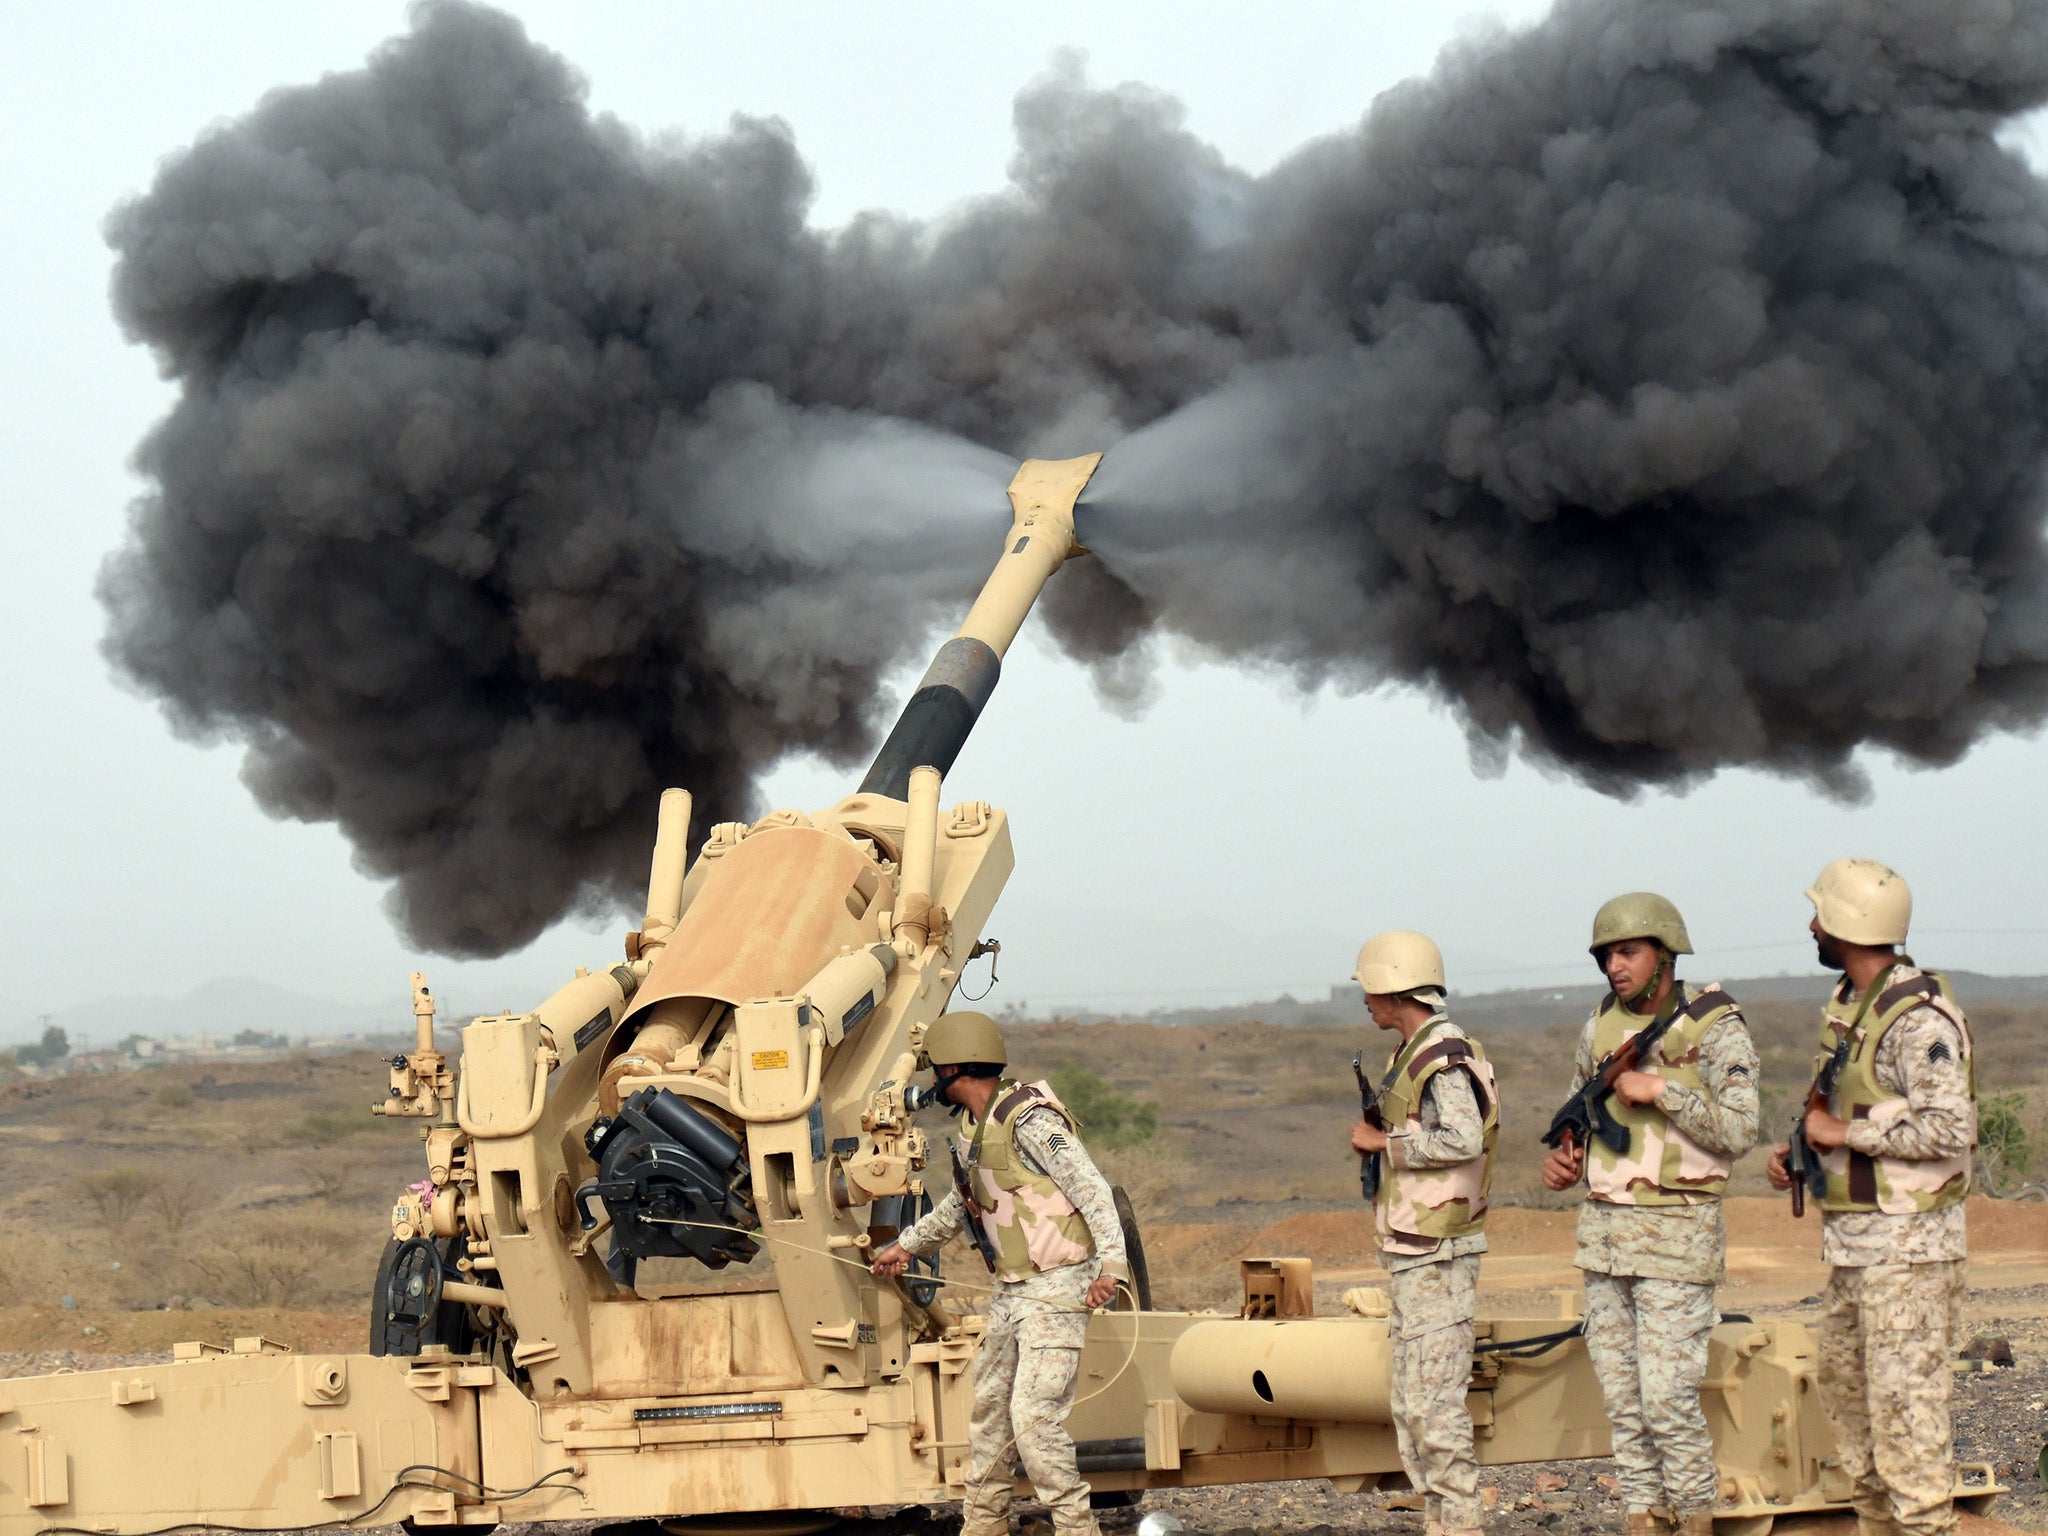 Saudi Arabian soldiers shelling positions in Yemen.